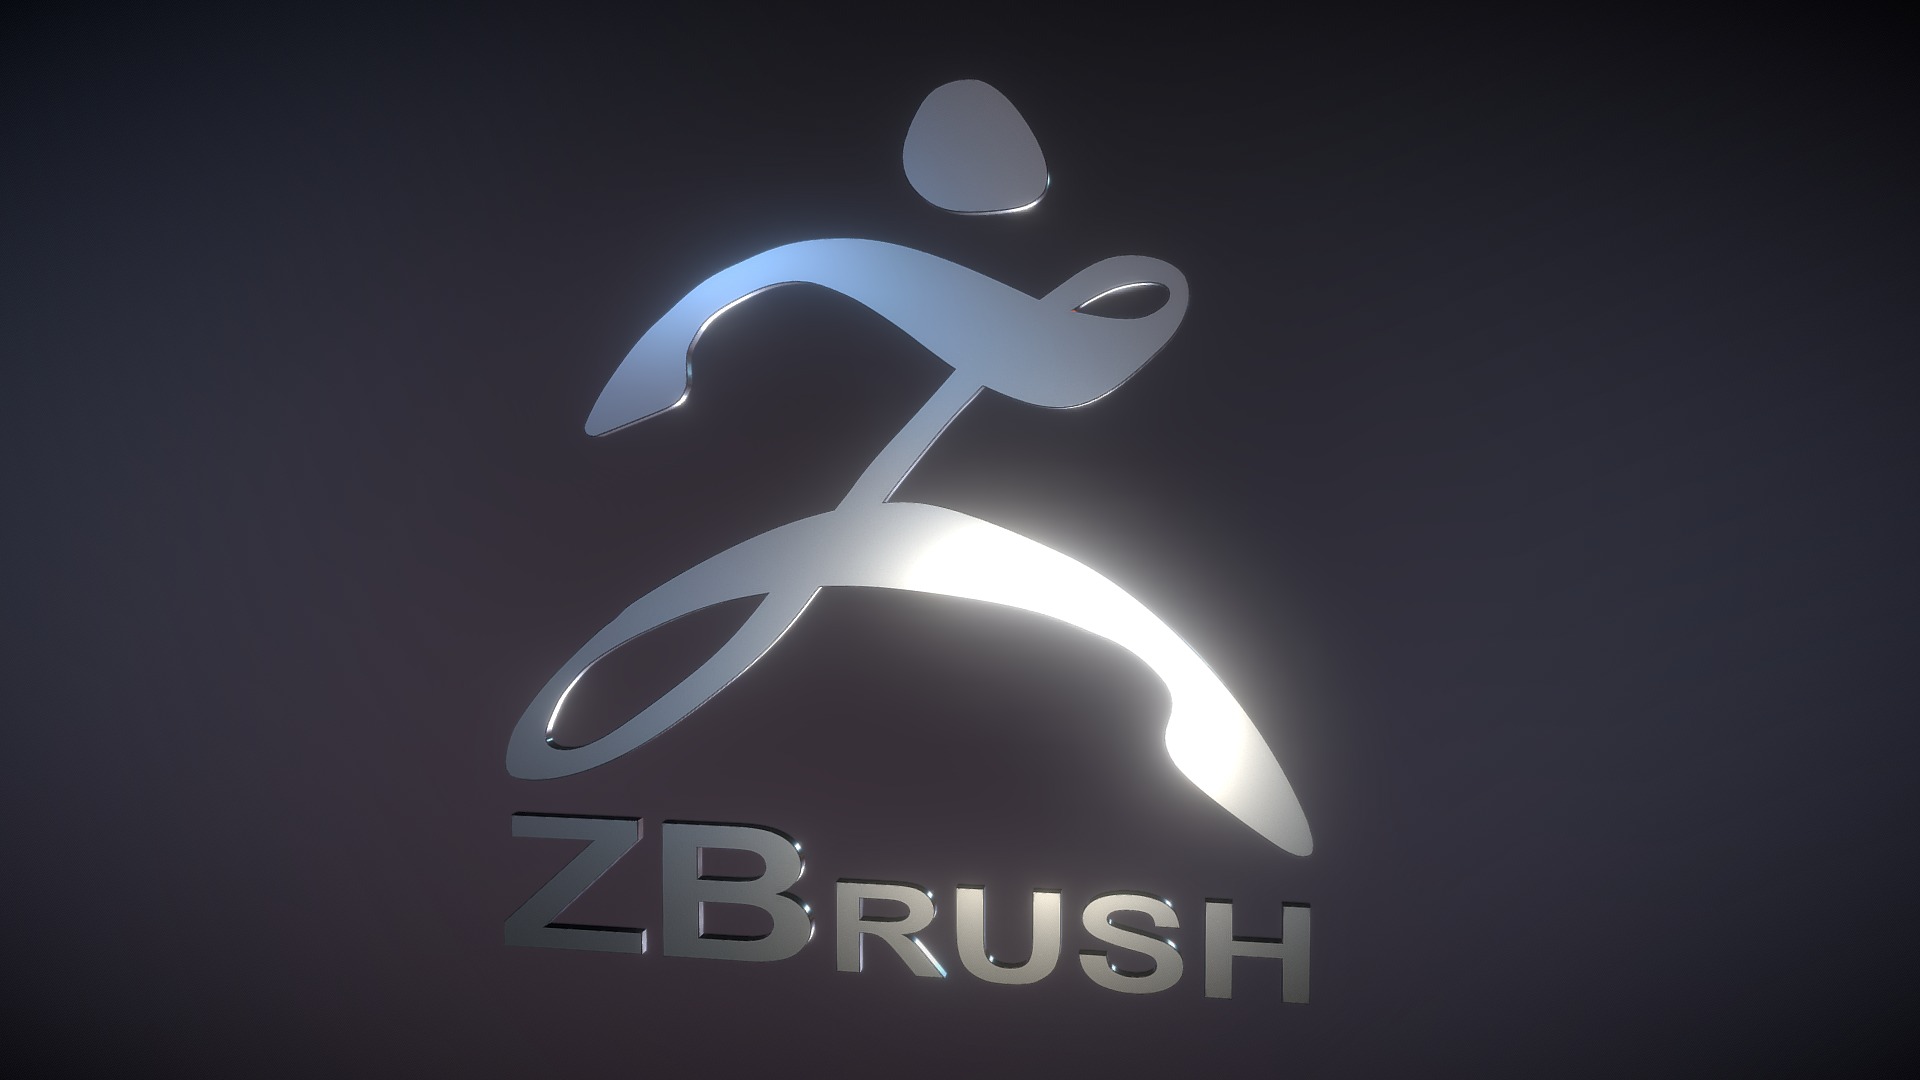 zbrush 3d emboss logo